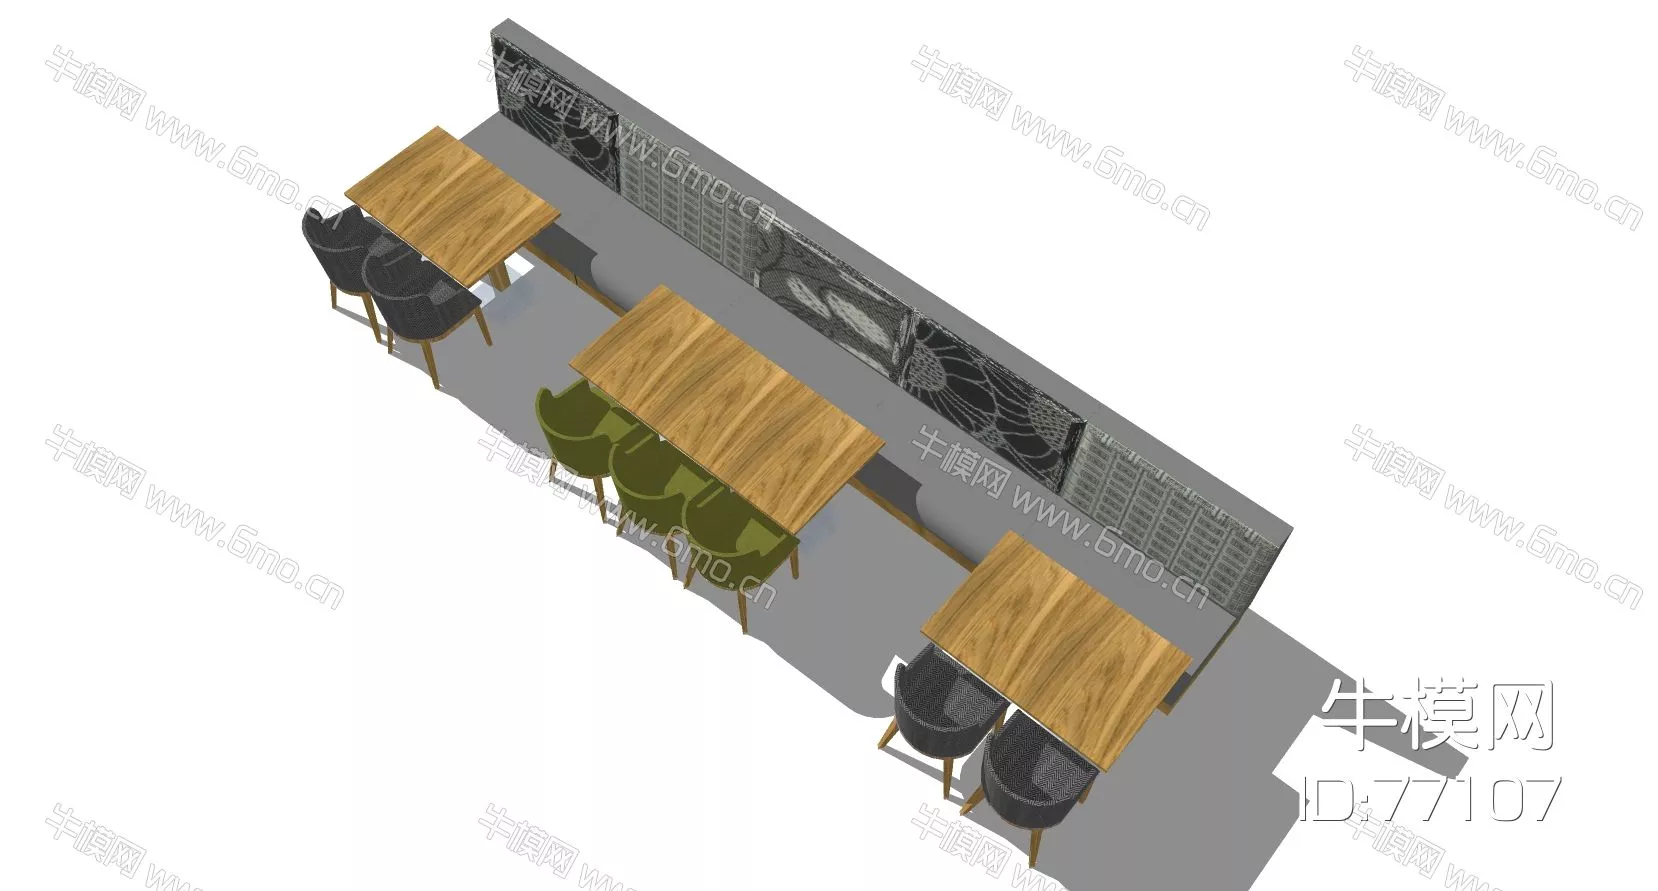 MODERN DINING TABLE SET - SKETCHUP 3D MODEL - ENSCAPE - 77107